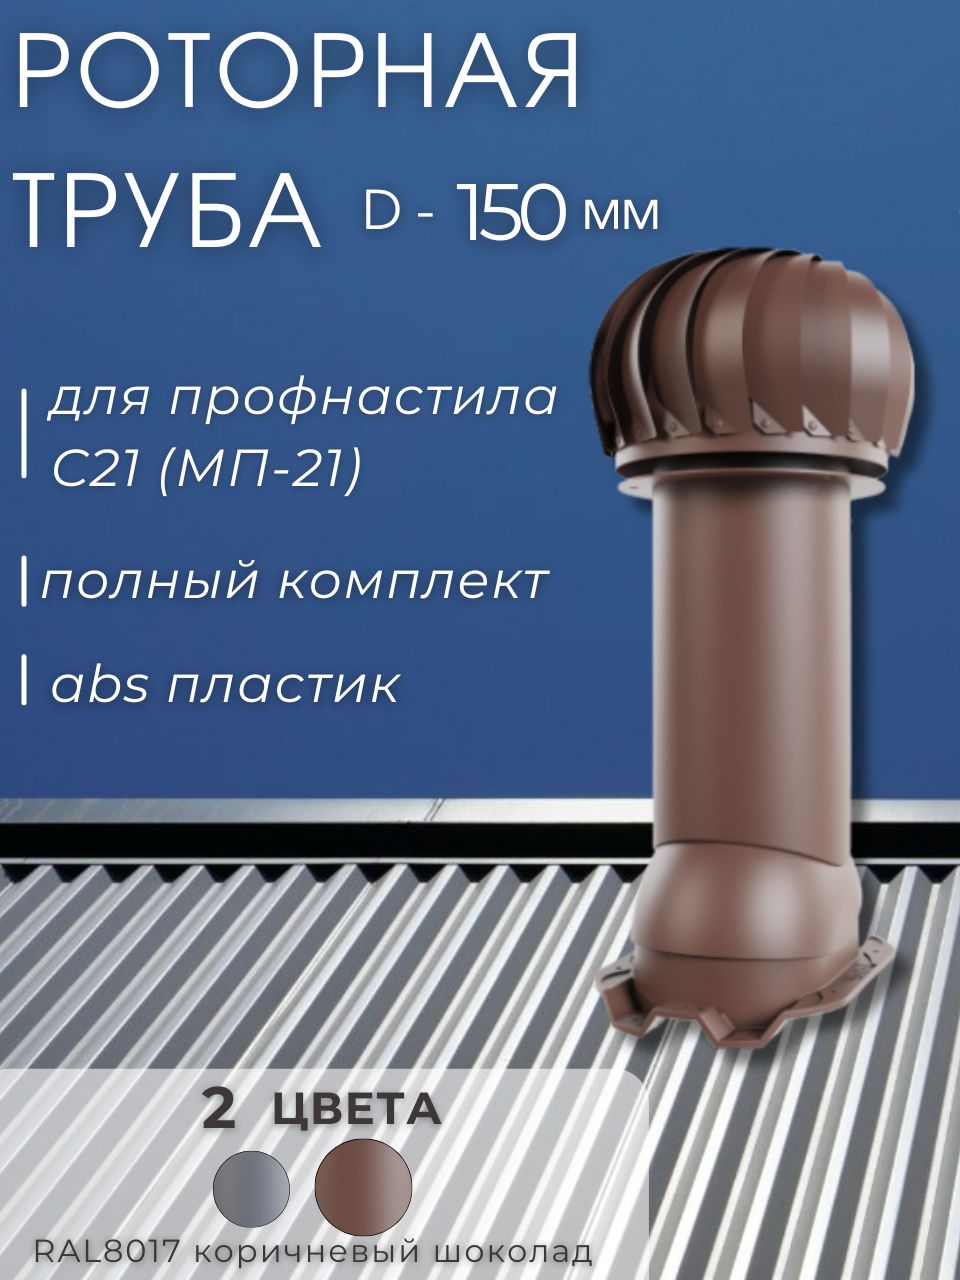 нож шнека для льда ir 150 диаметр 150мм комплект 2 шт denzel denzel 56011 Вентиляционная роторная труба Viotto 150мм для профнастила 21мм коричневый шоколад RAL8017